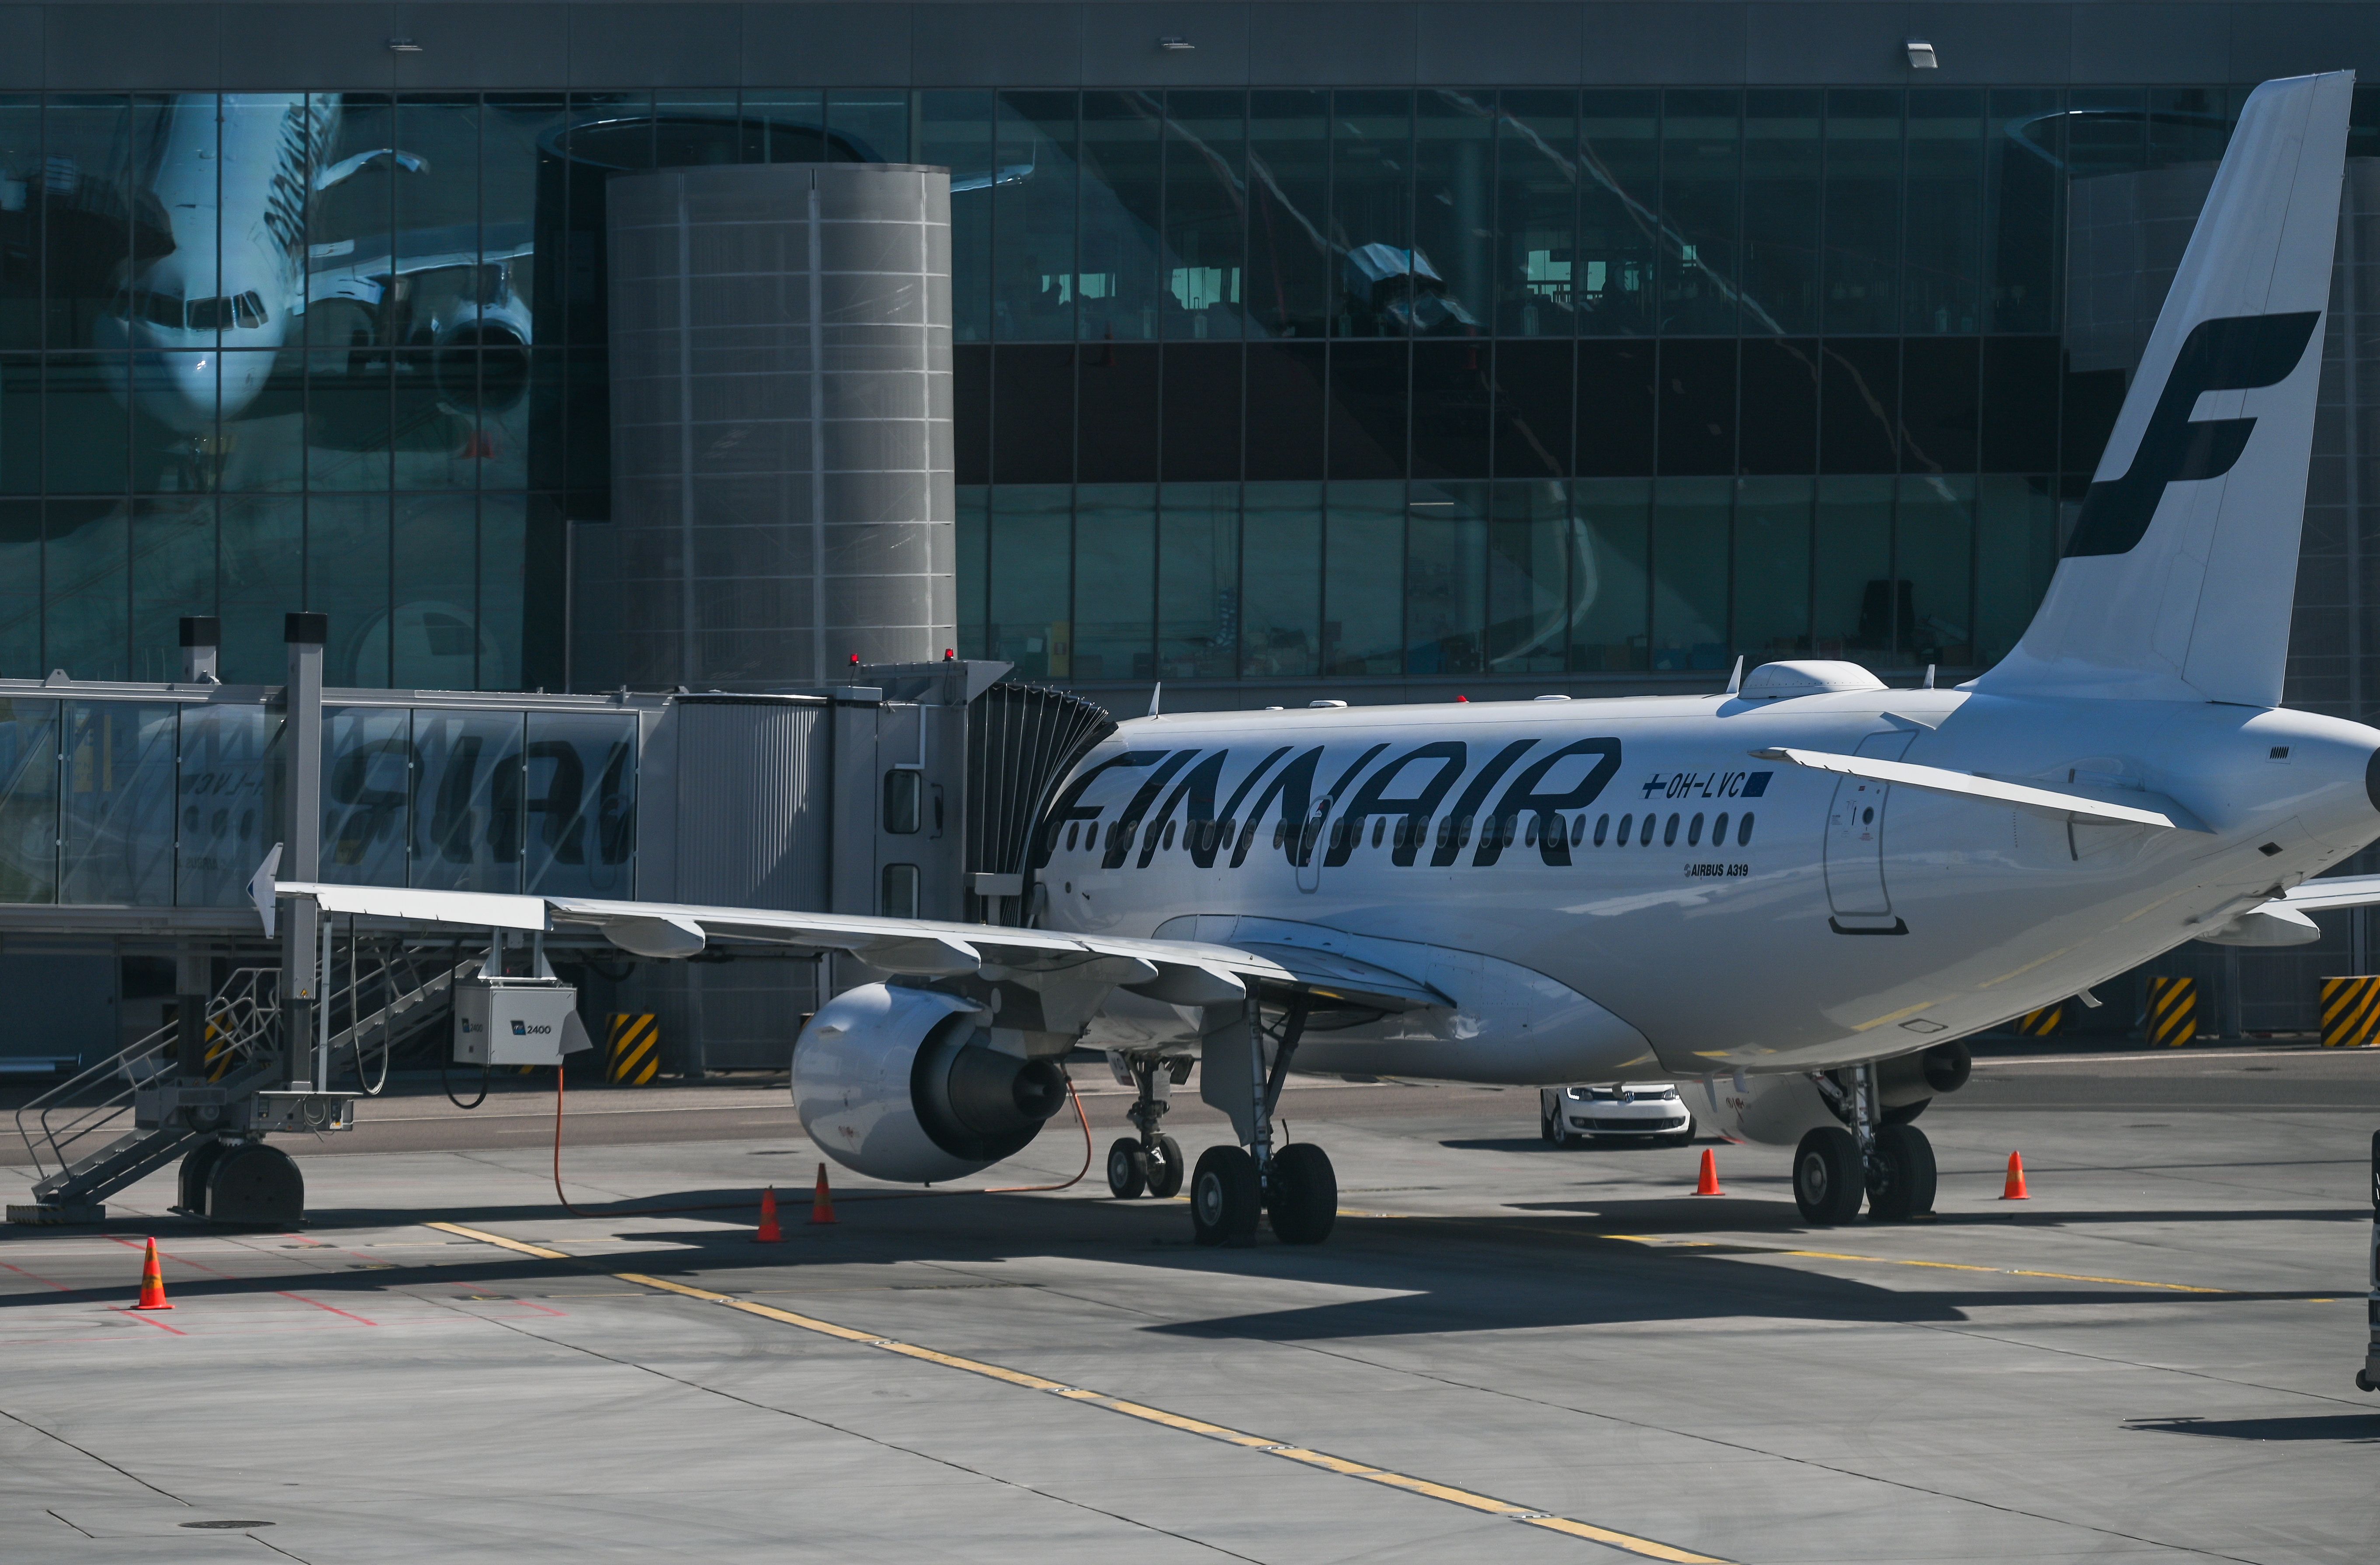 Finnair aircraft at Helsinki-Vantaa Airport